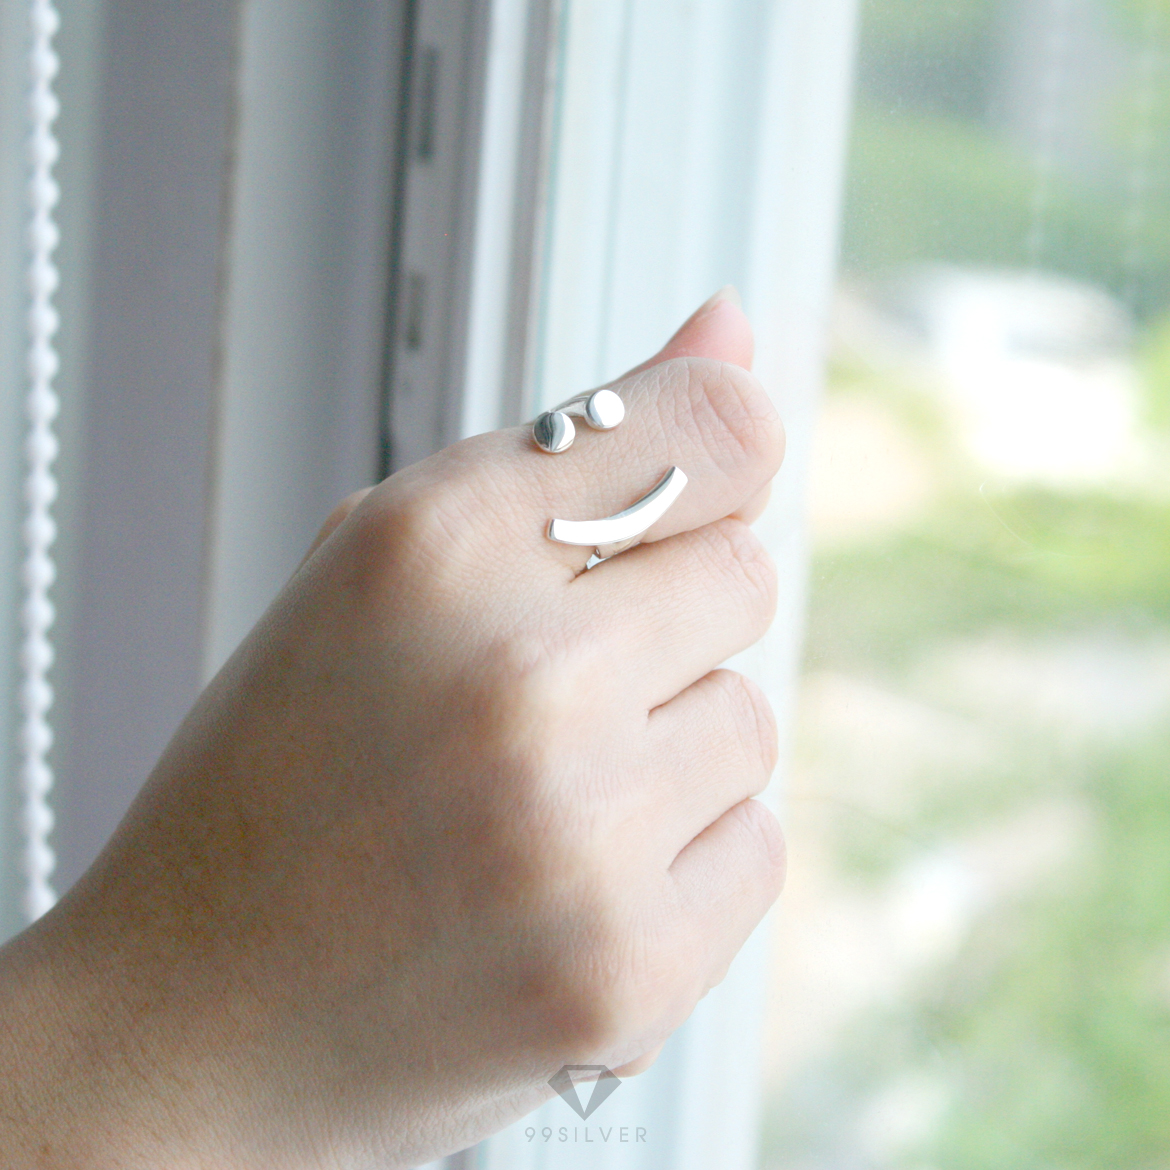 แหวนอีโม Emo Ring แฟชั่นน่ารักๆ เป็นรูปหน้ายิ้ม ตัวเรือนเปิด